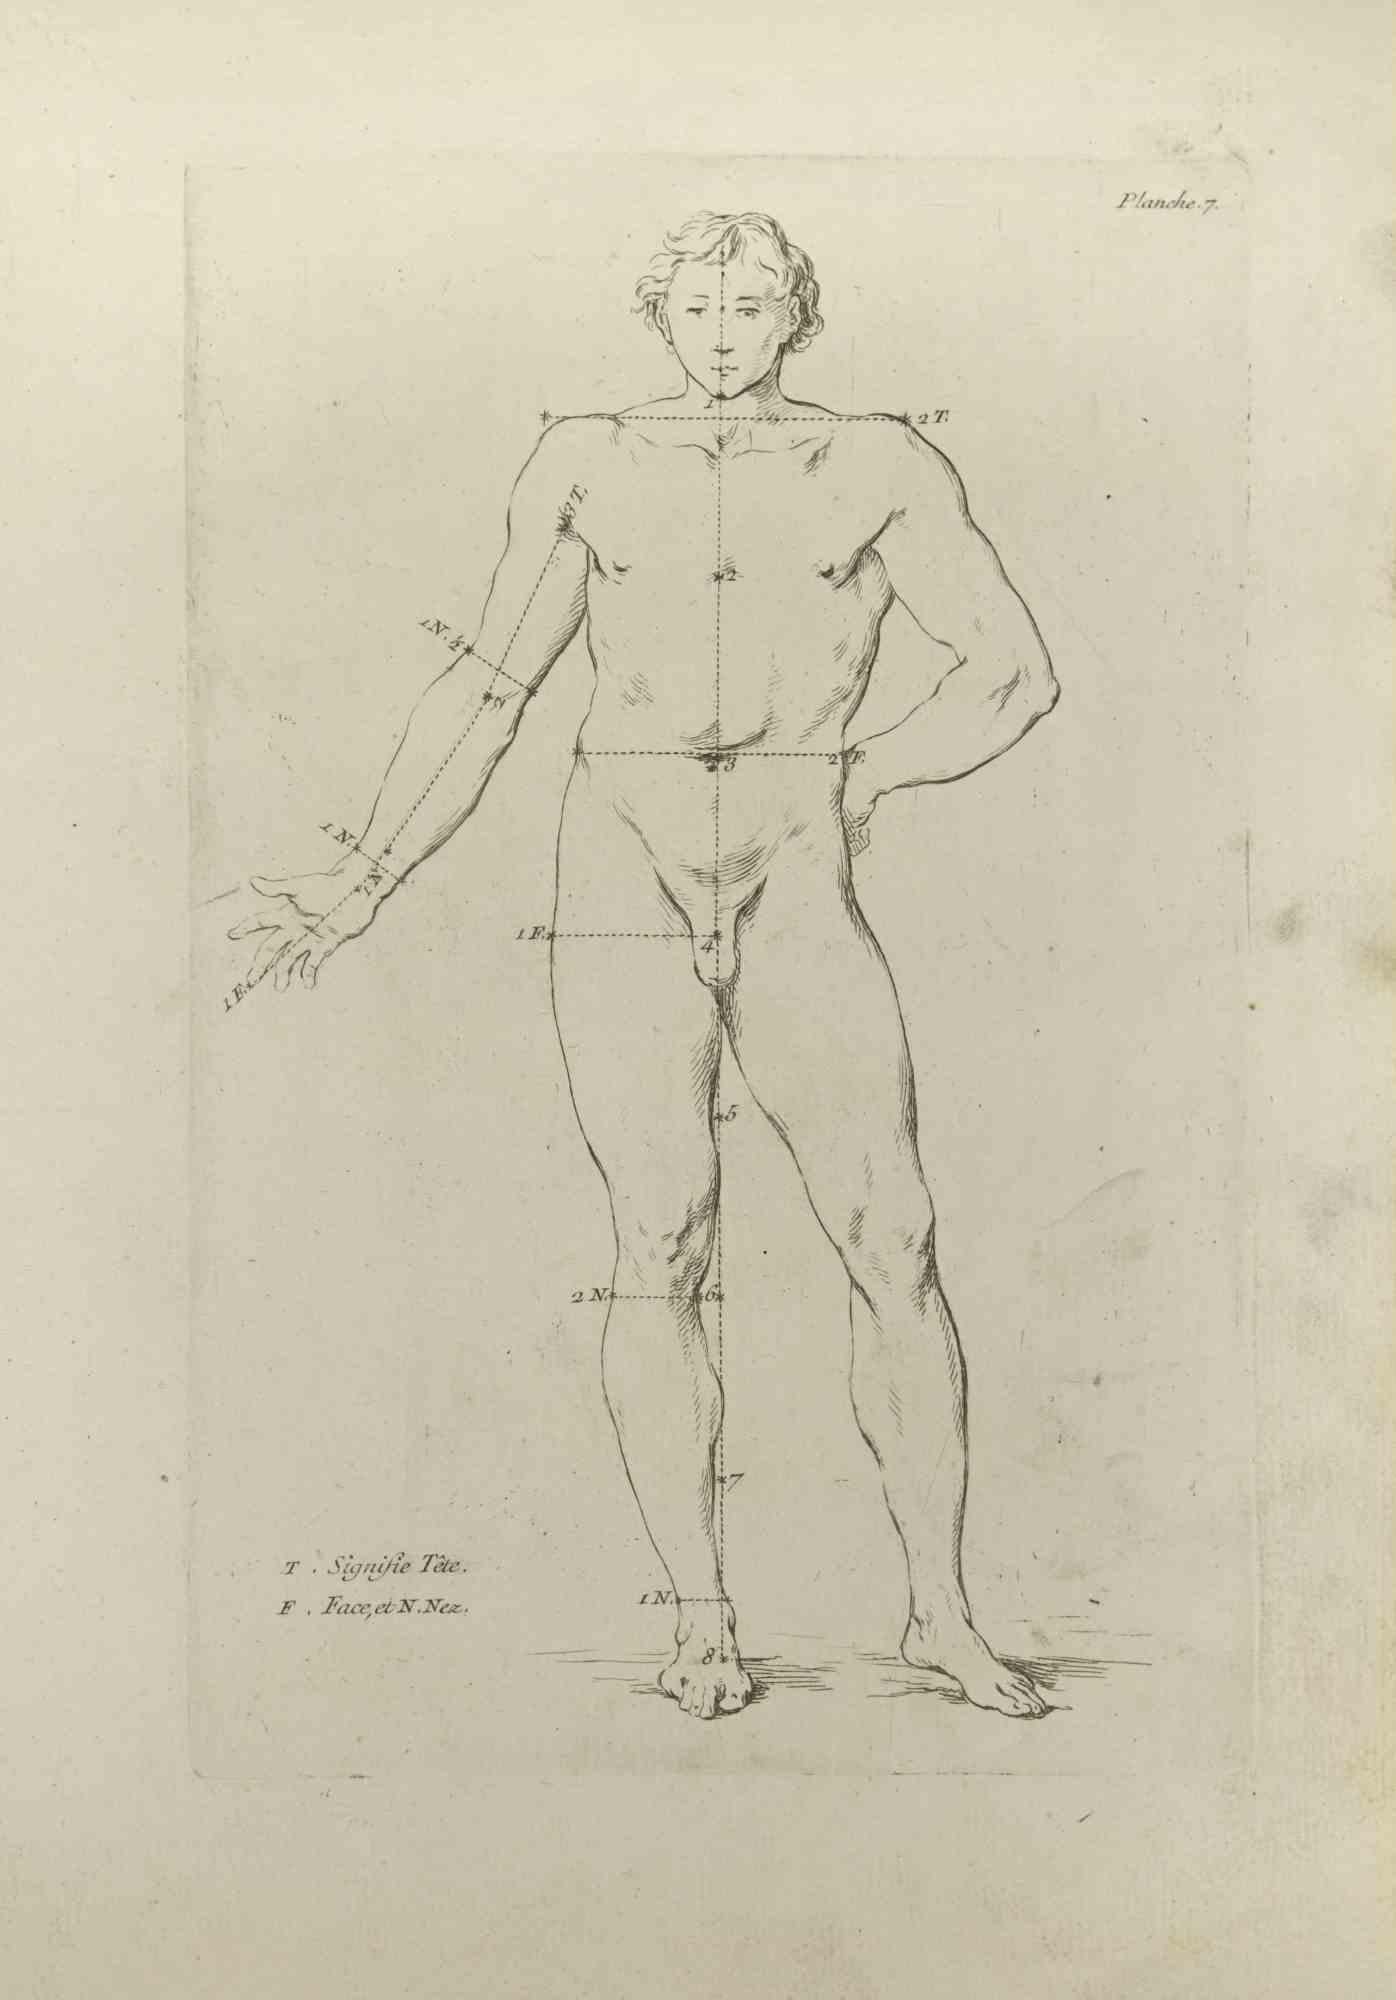 Anatomie-Studien ist eine Radierung von Nicholas Cochin aus dem Jahr 1755.

Guter Zustand mit Stockflecken und Falten.

Das Kunstwerk wird mit sicheren Strichen dargestellt.

Die Radierung wurde für die Anatomie-Studie "JOMBERT, Charles-Antoine